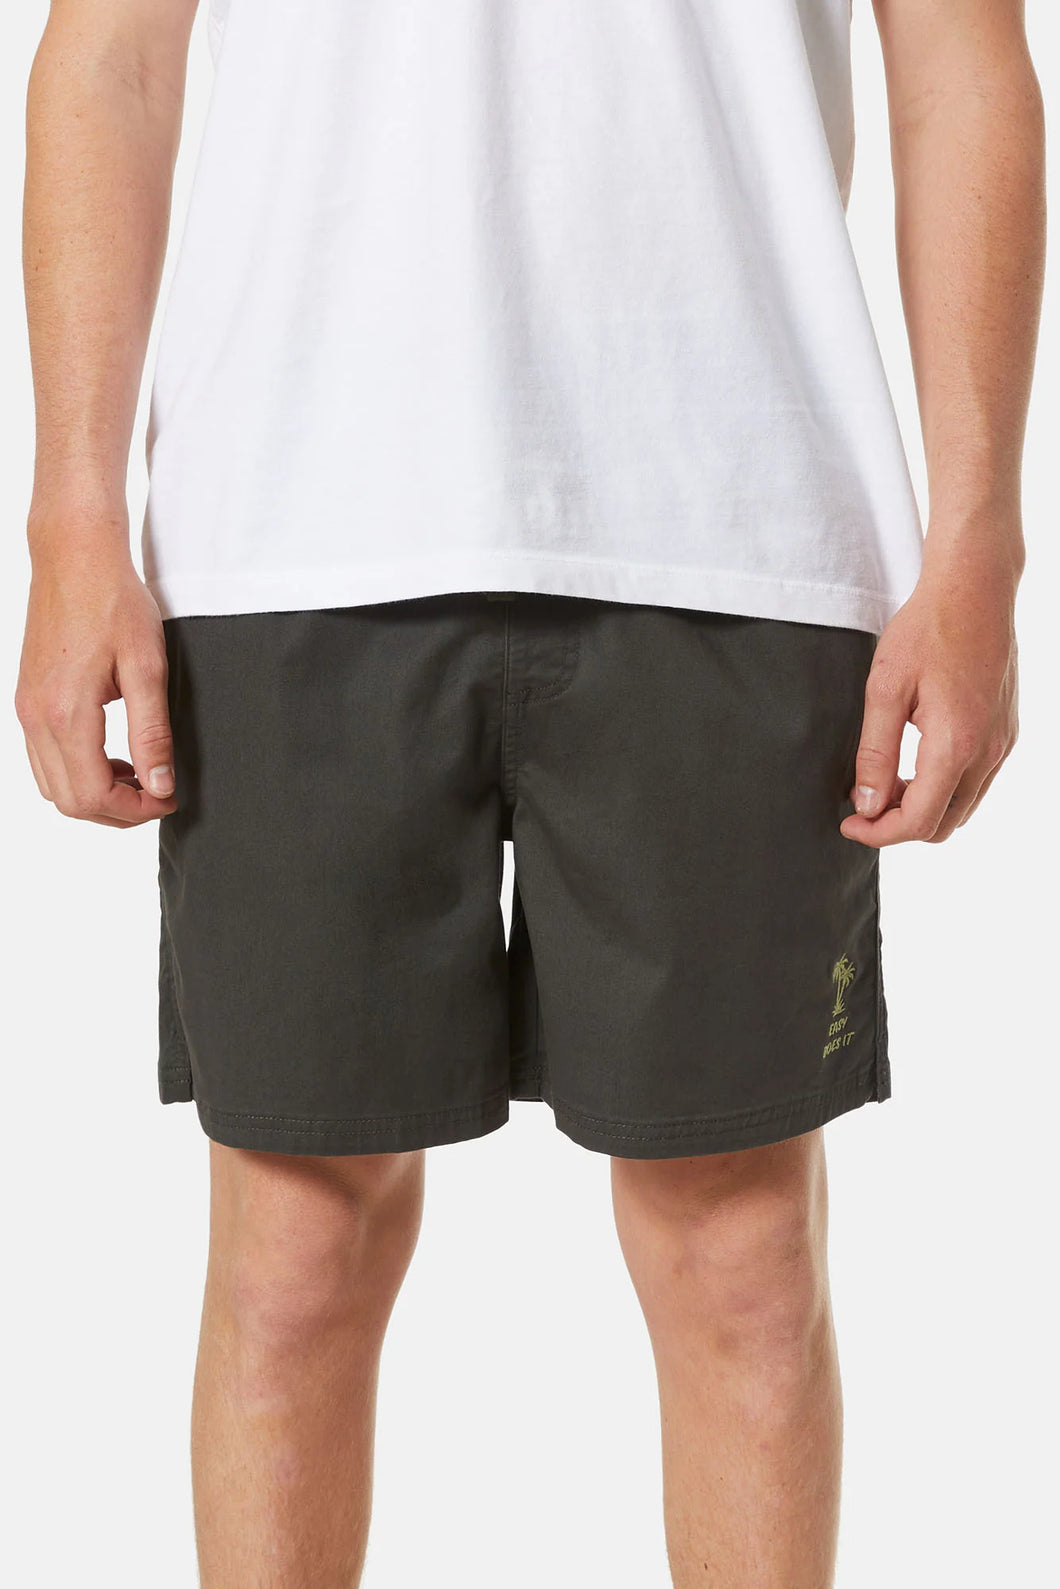 Katin Men's Frank/Fusion Shorts